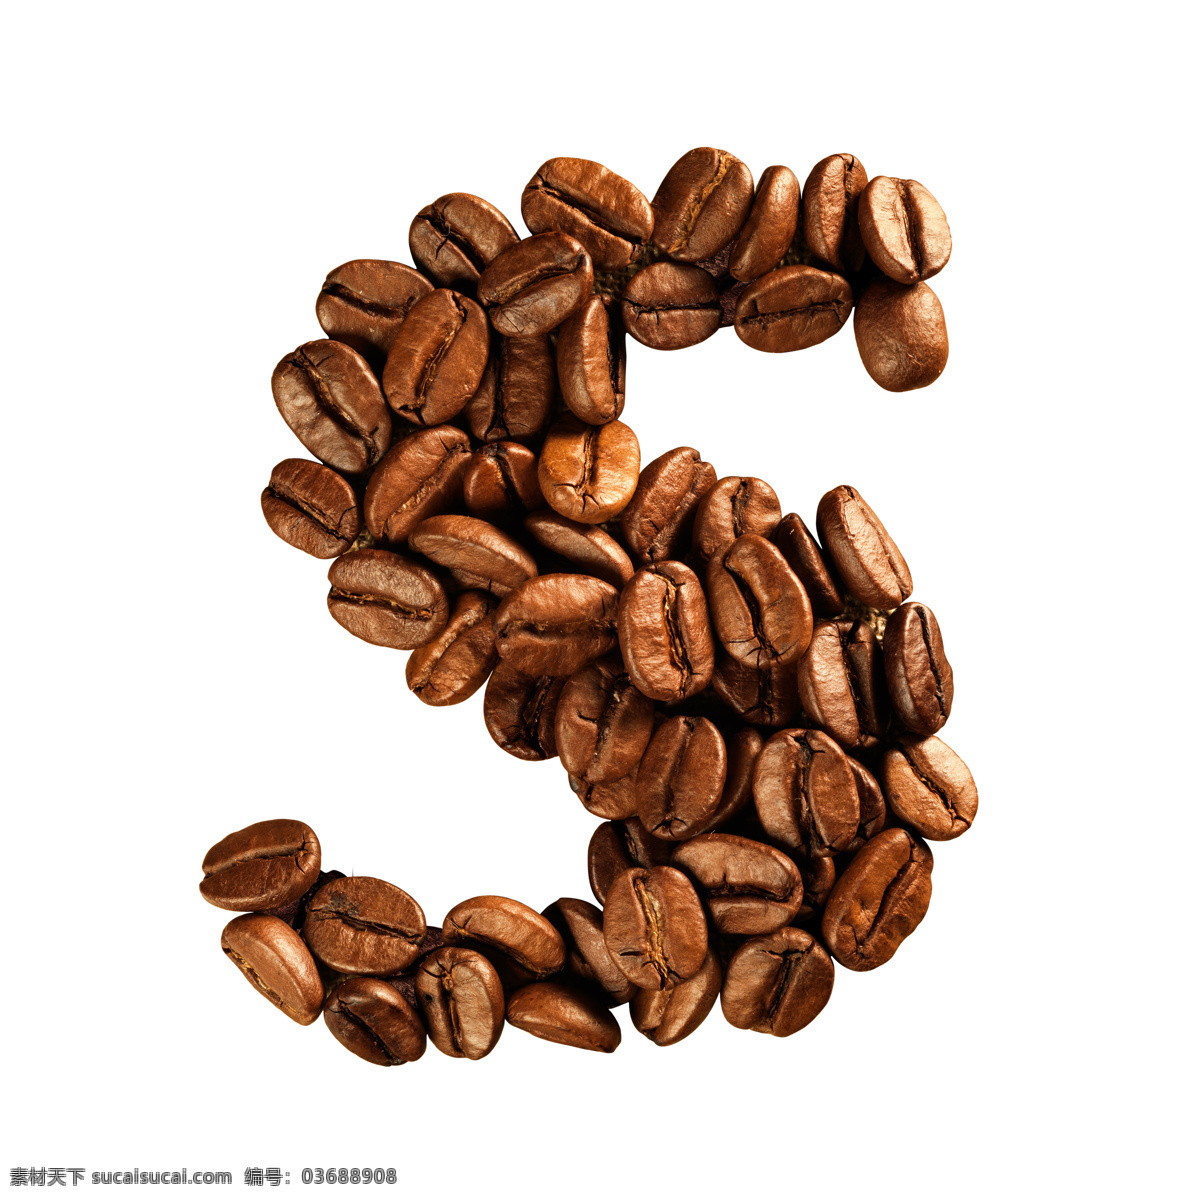 咖啡豆 组成 字母 s 咖啡 文字 艺术字体 咖啡图片 餐饮美食